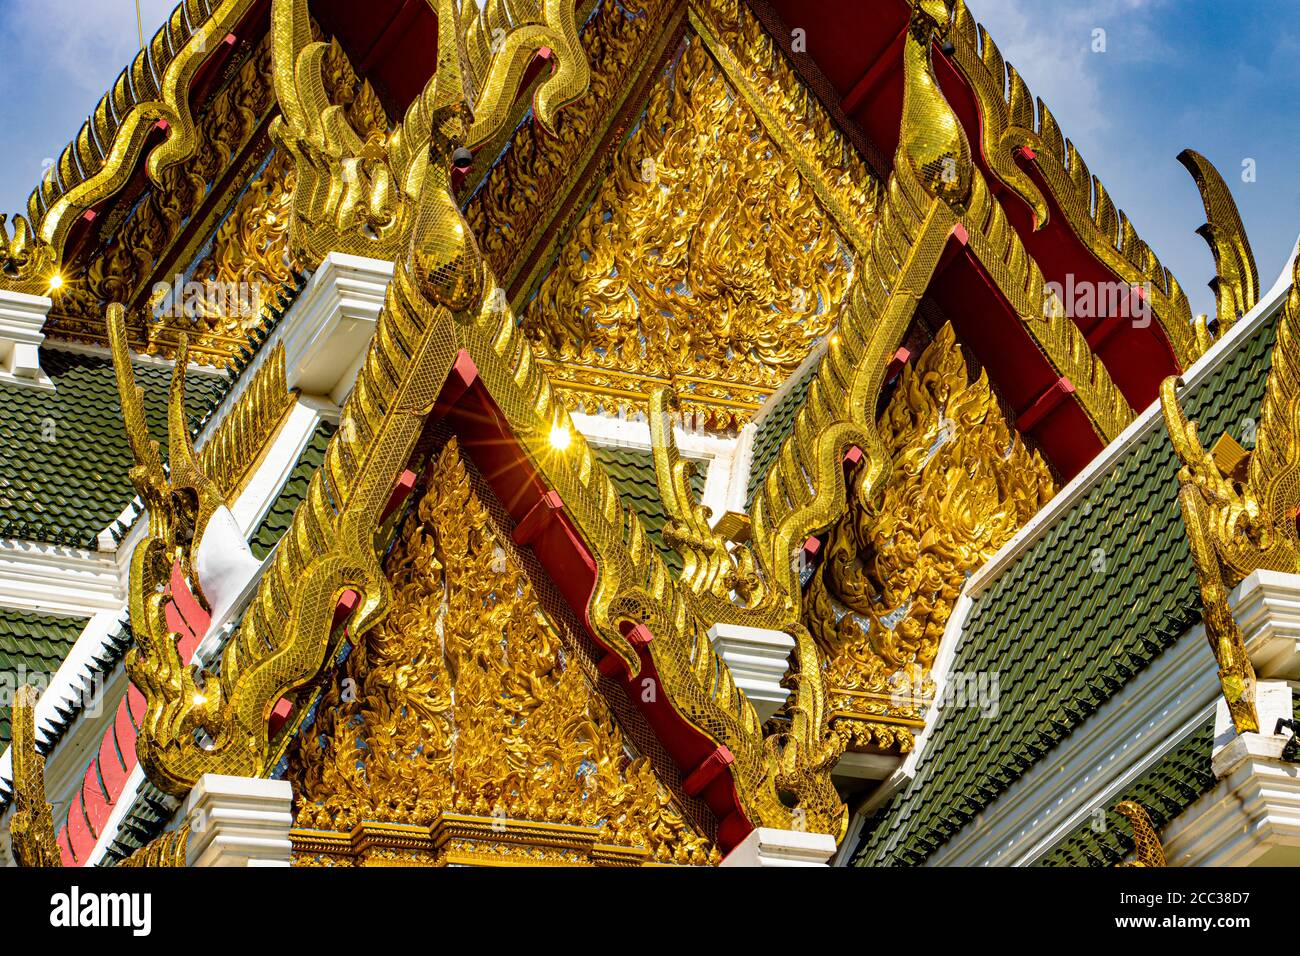 Reich verzierte Dach des buddhistischen Tempels. Vergoldete Dekoration eines buddhistischen Klosters, Wat Khun Inthapramun, Thailand. Stockfoto